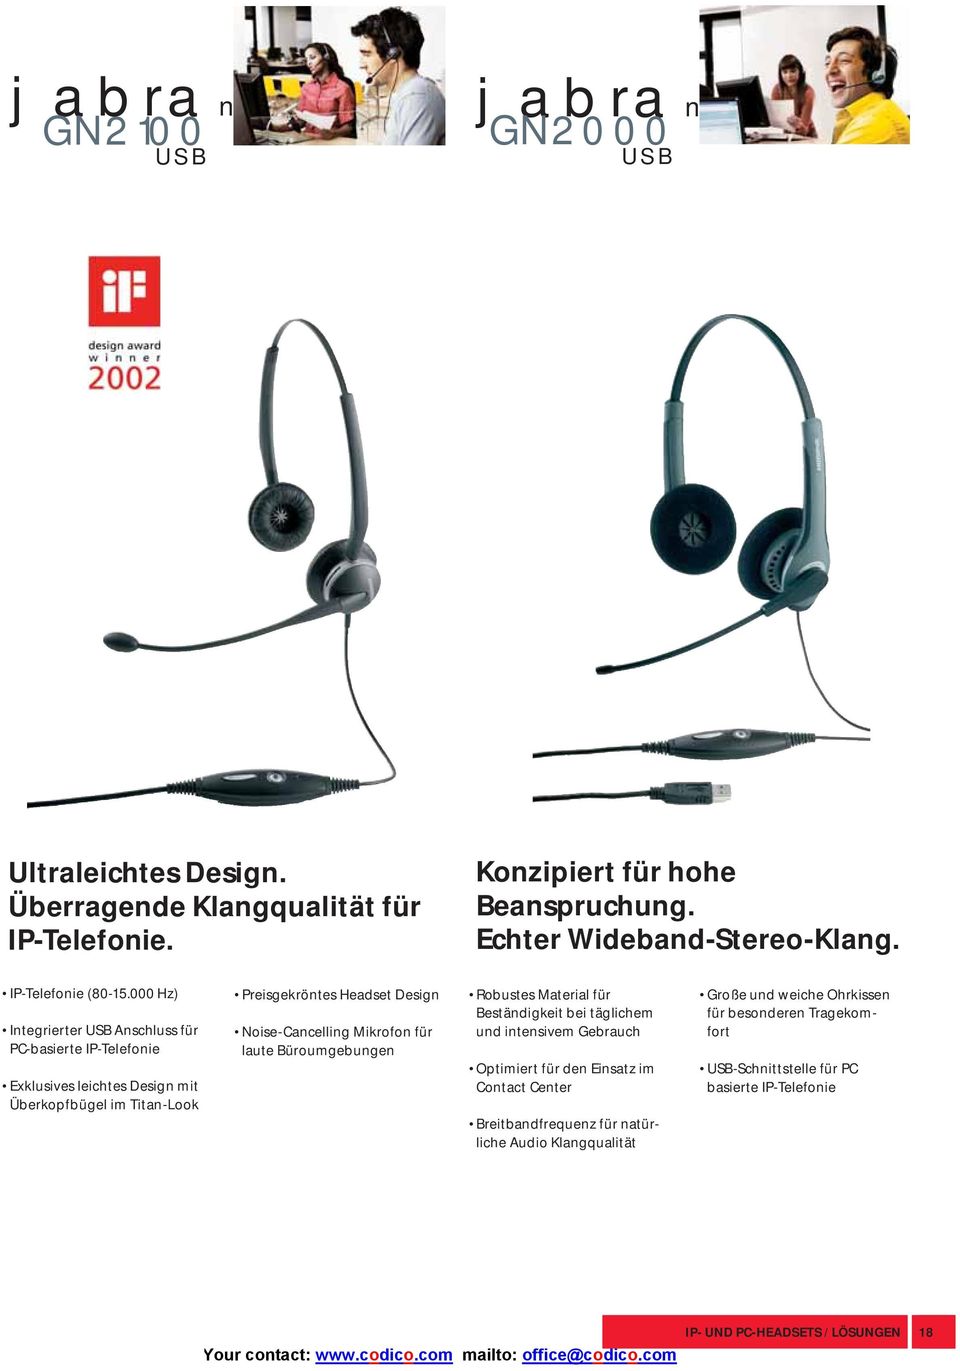 000 Hz) Integrierter USB Anschluss für PC-basierte IP-Telefonie Exklusives leichtes Design mit Überkopfbügel im Titan-Look Preisgekröntes Headset Design Noise-Cancelling